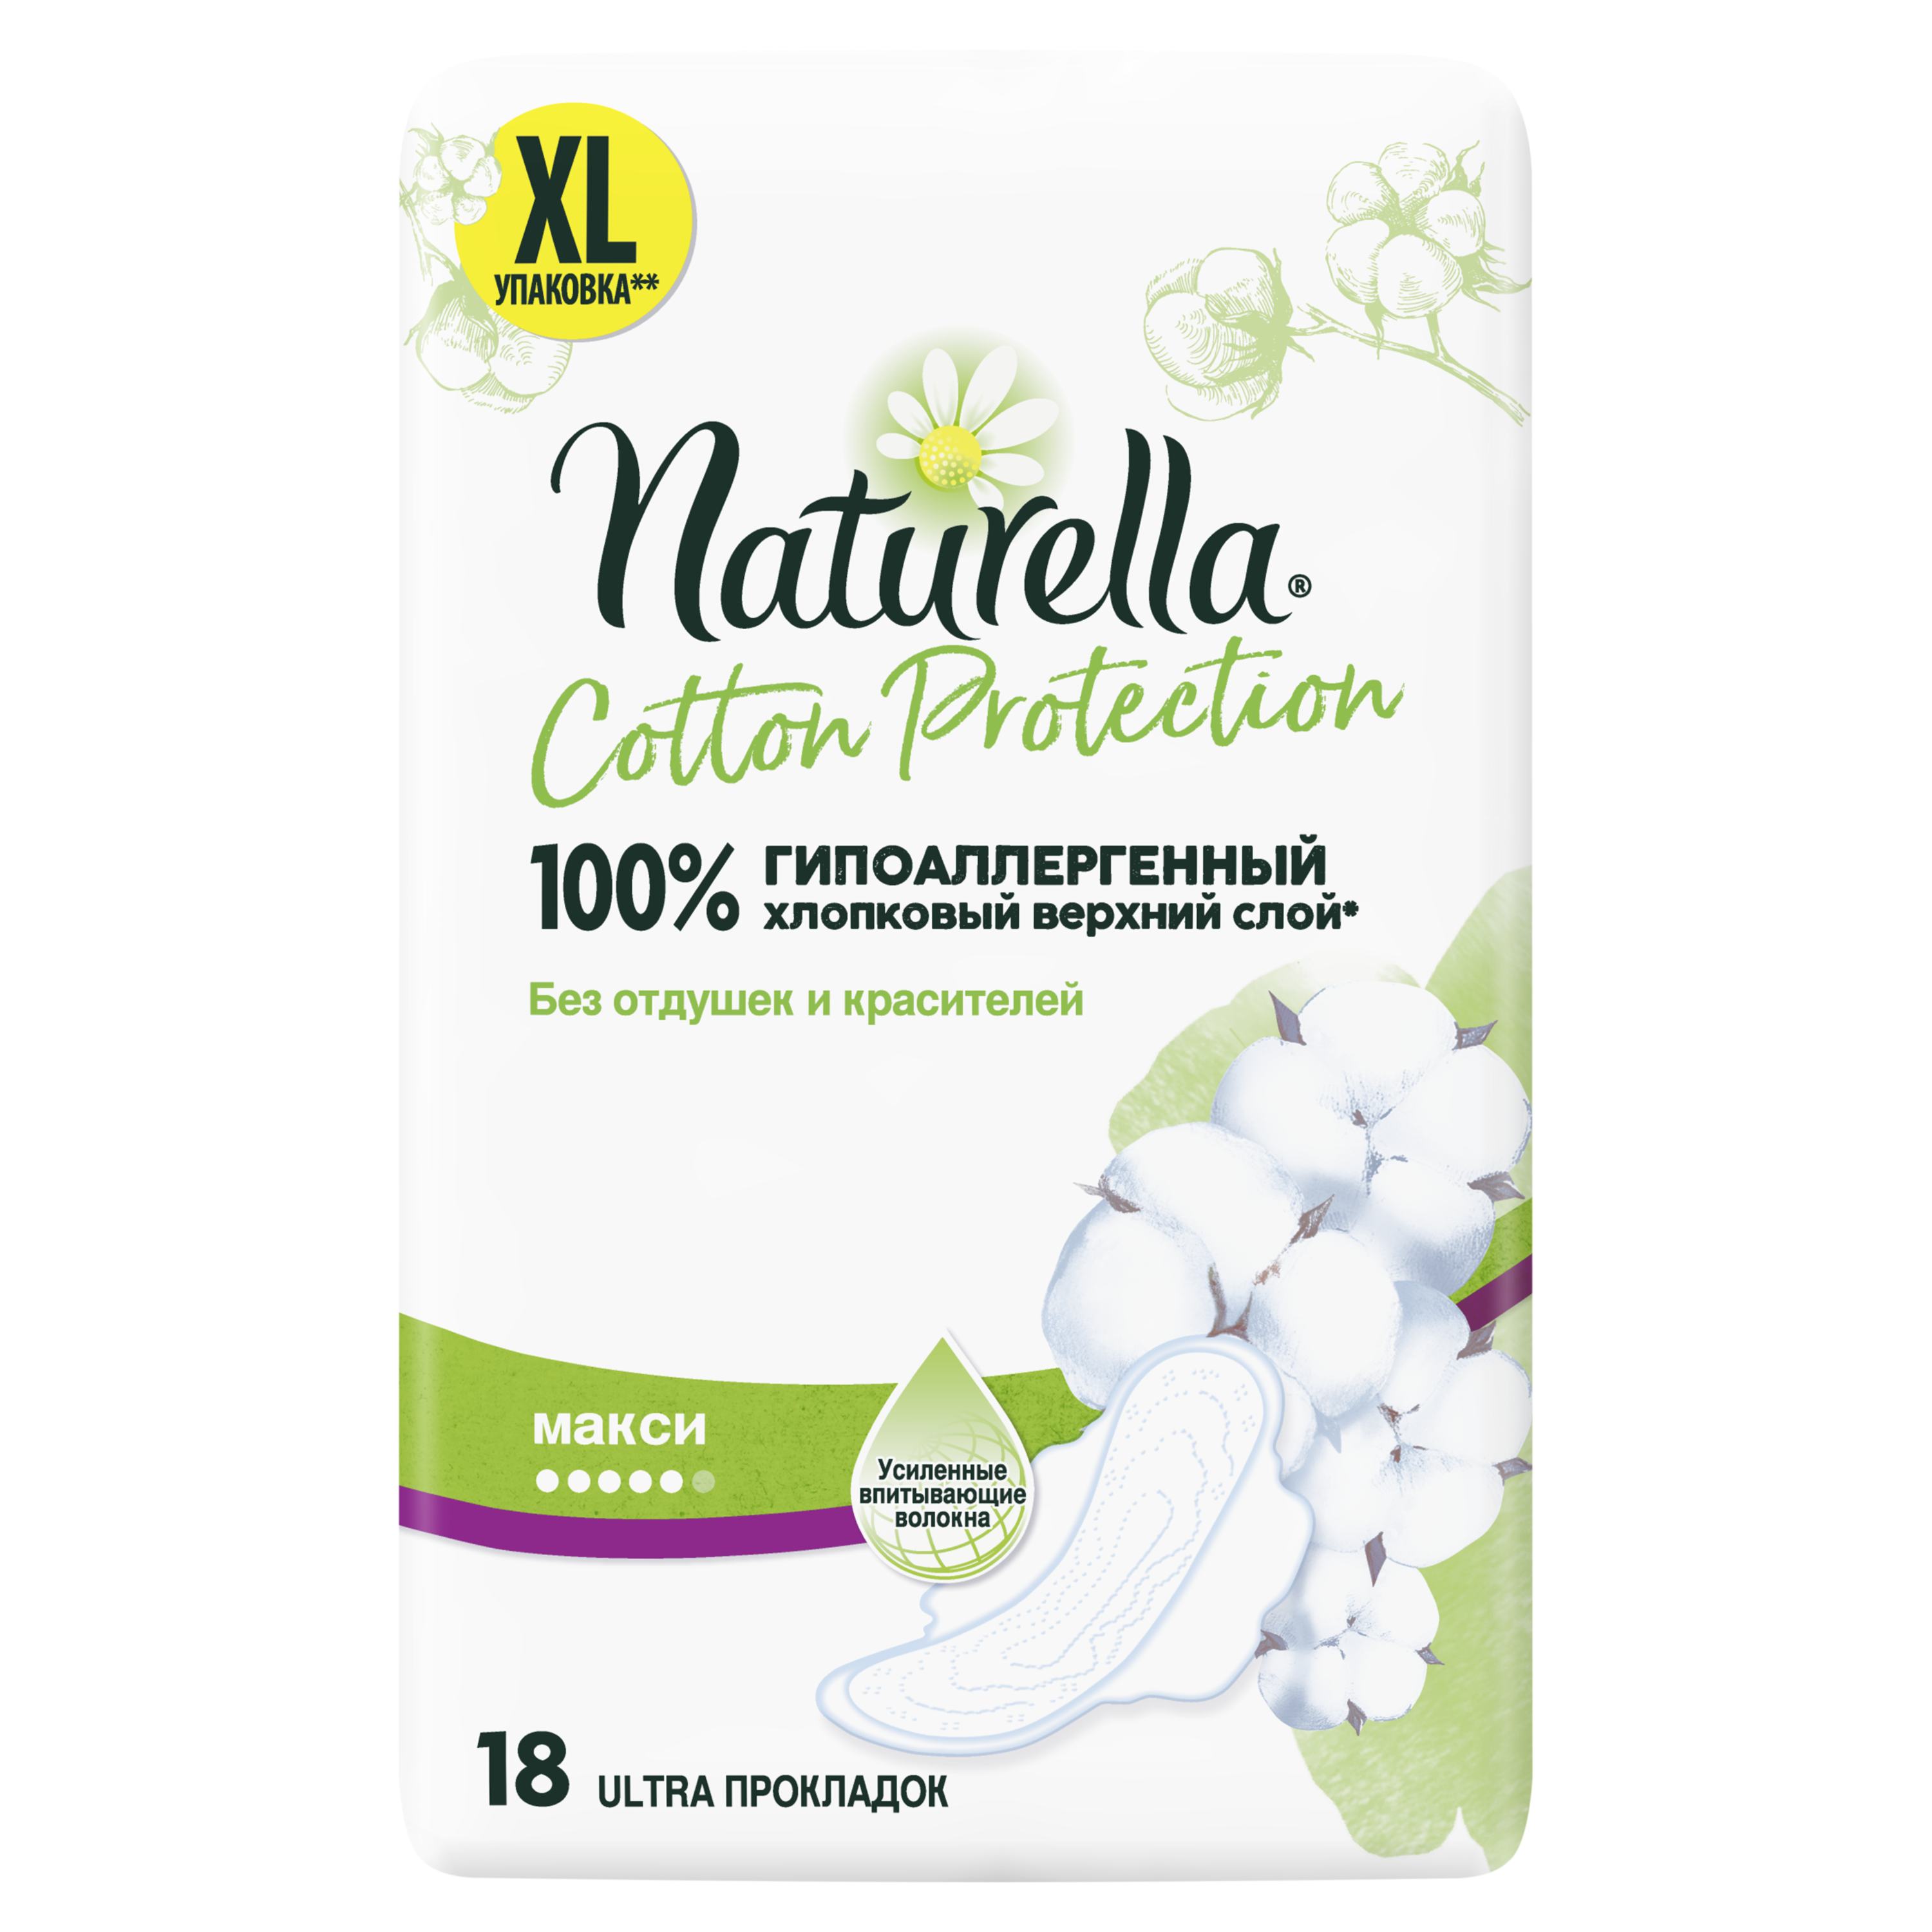 Прокладки Гигиенические Naturella Cotton Protection Maxi 18 гигиенические прокладки d recipe real cotton pads large из натурального хлопка 10 шт